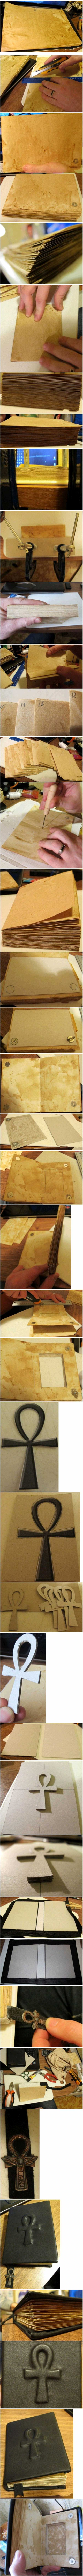 Как сделать блокноты – Блокнот своими руками от а до я